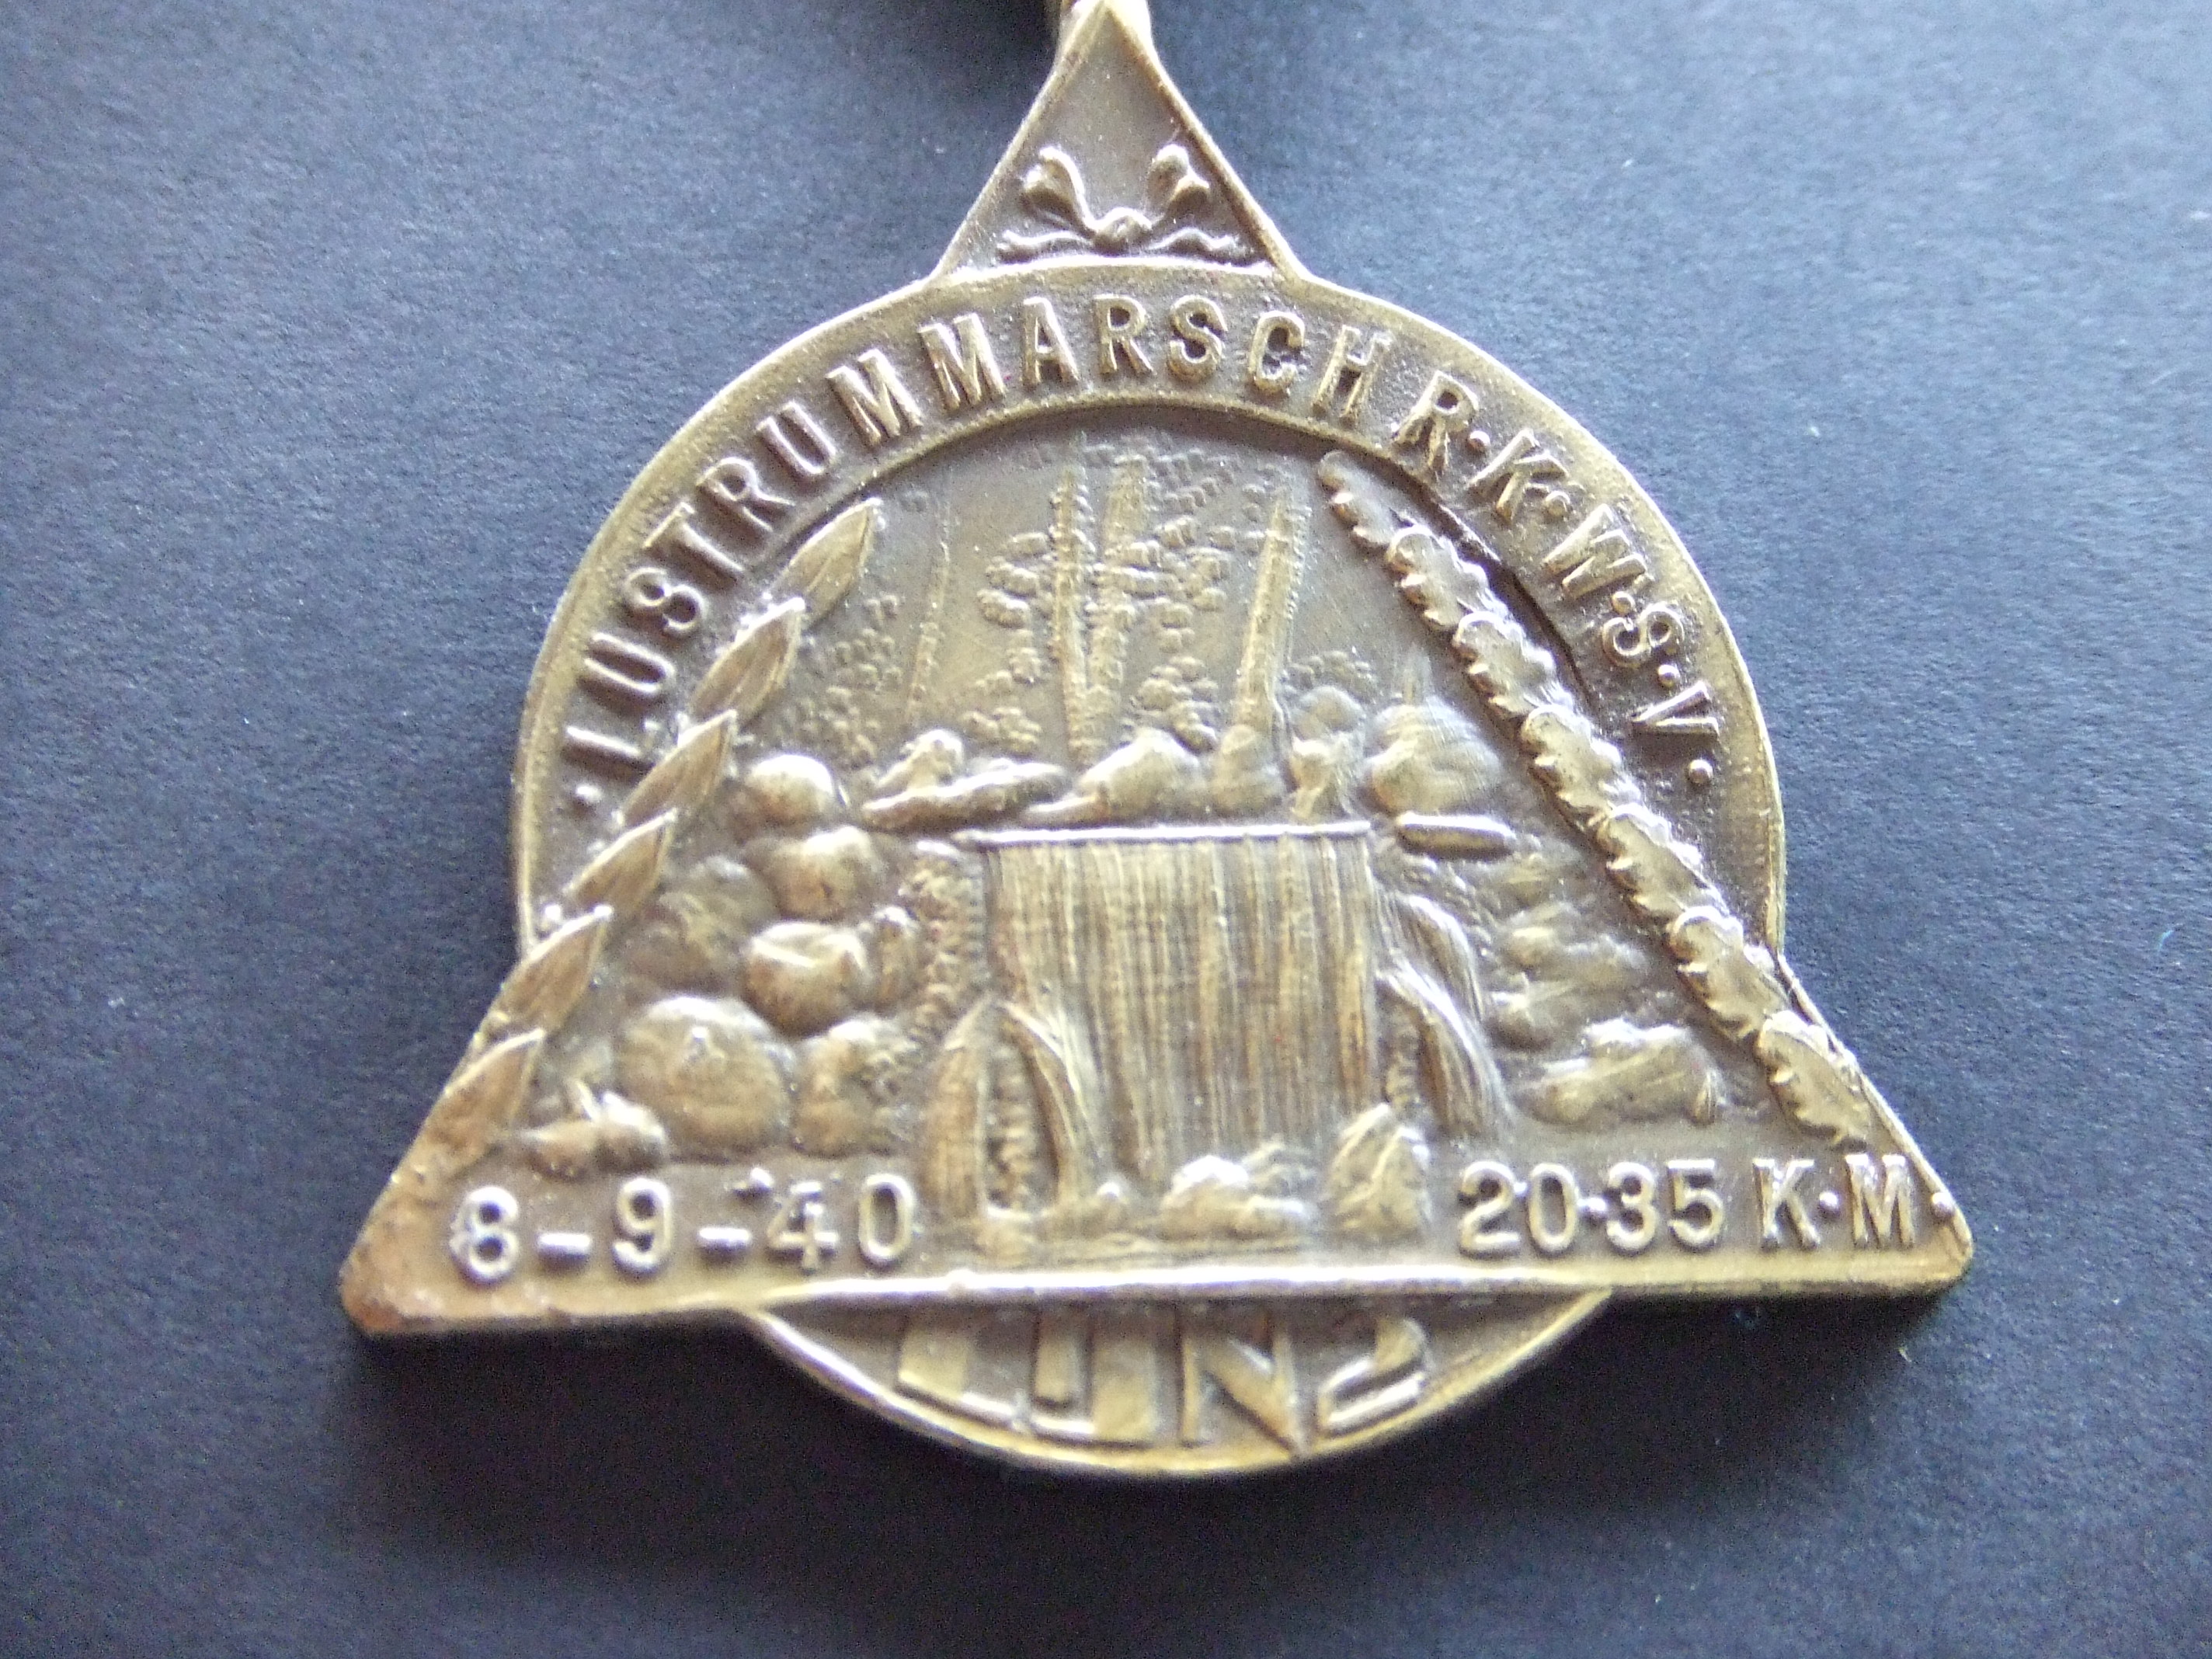 Wandelsportvereniging lijn 2 oude medaille 1940